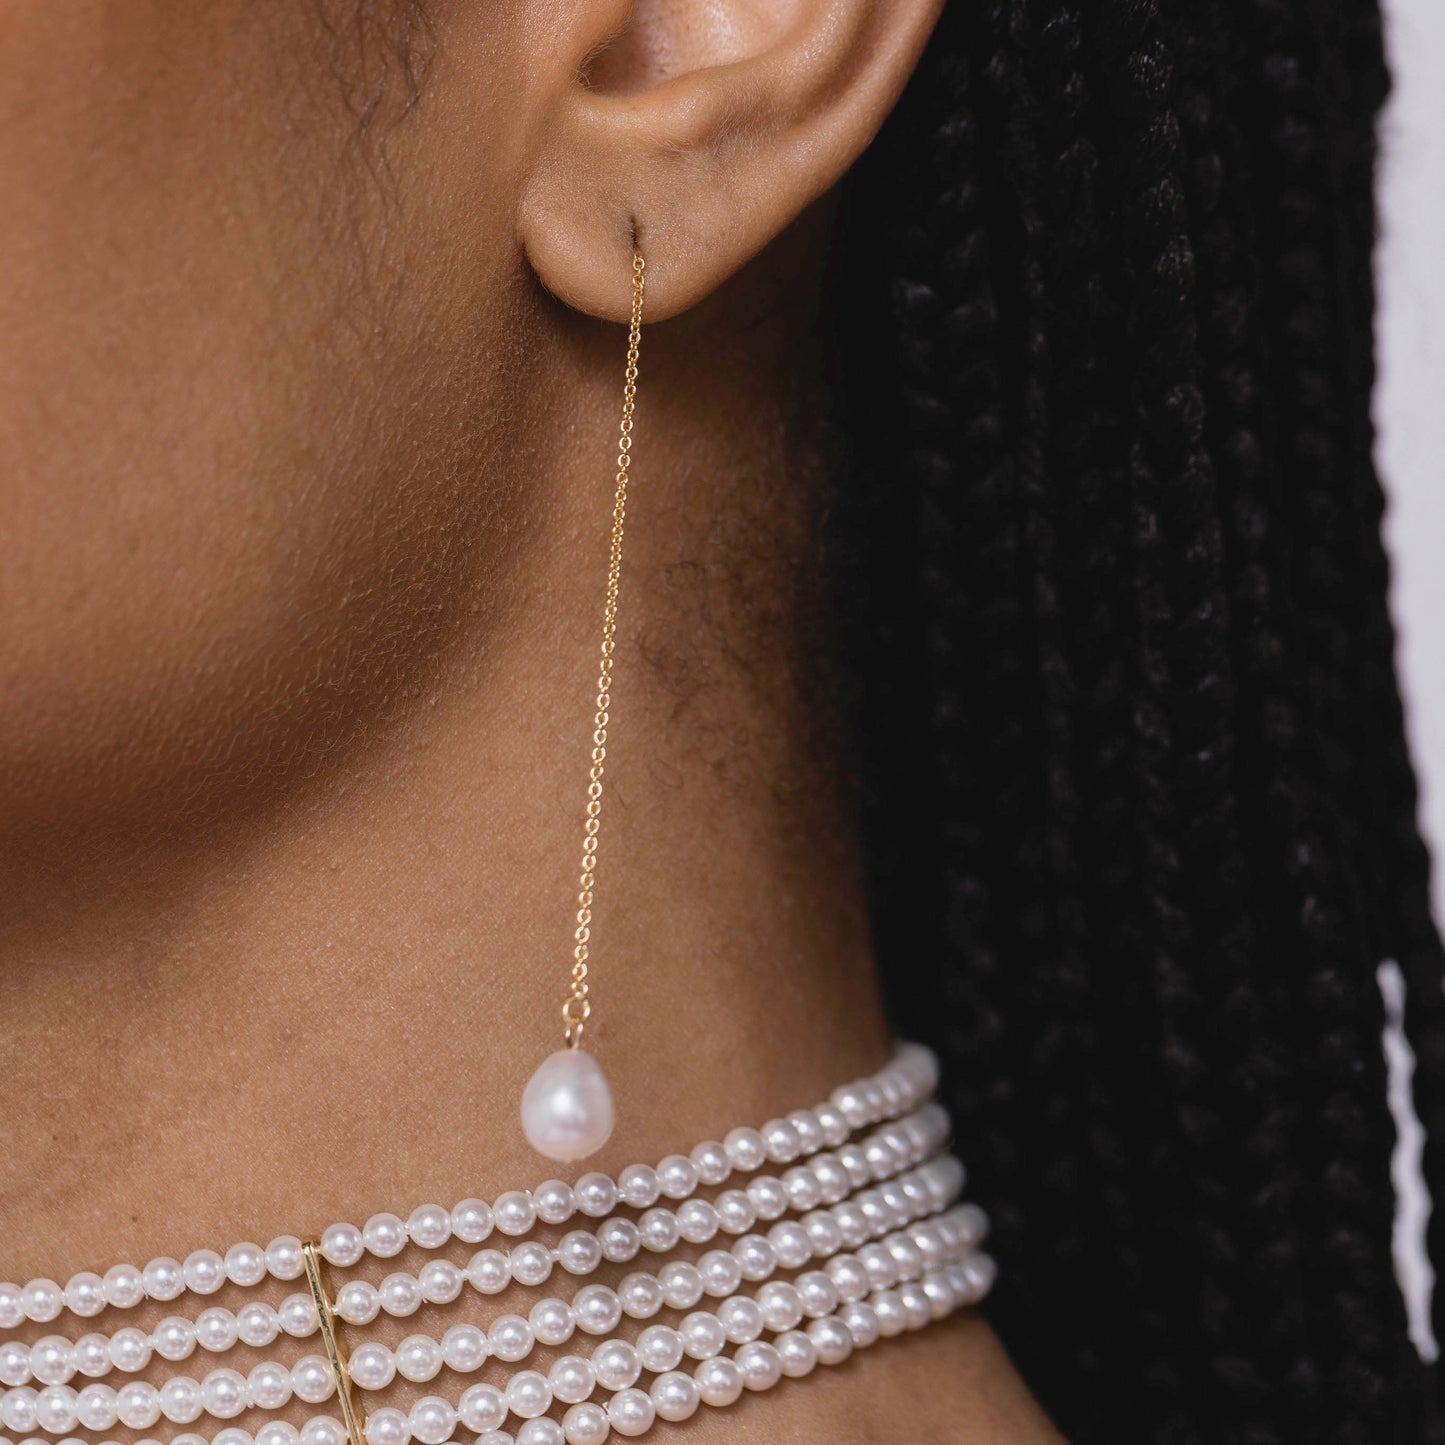 La Perla Threader Earrings in White - Pair